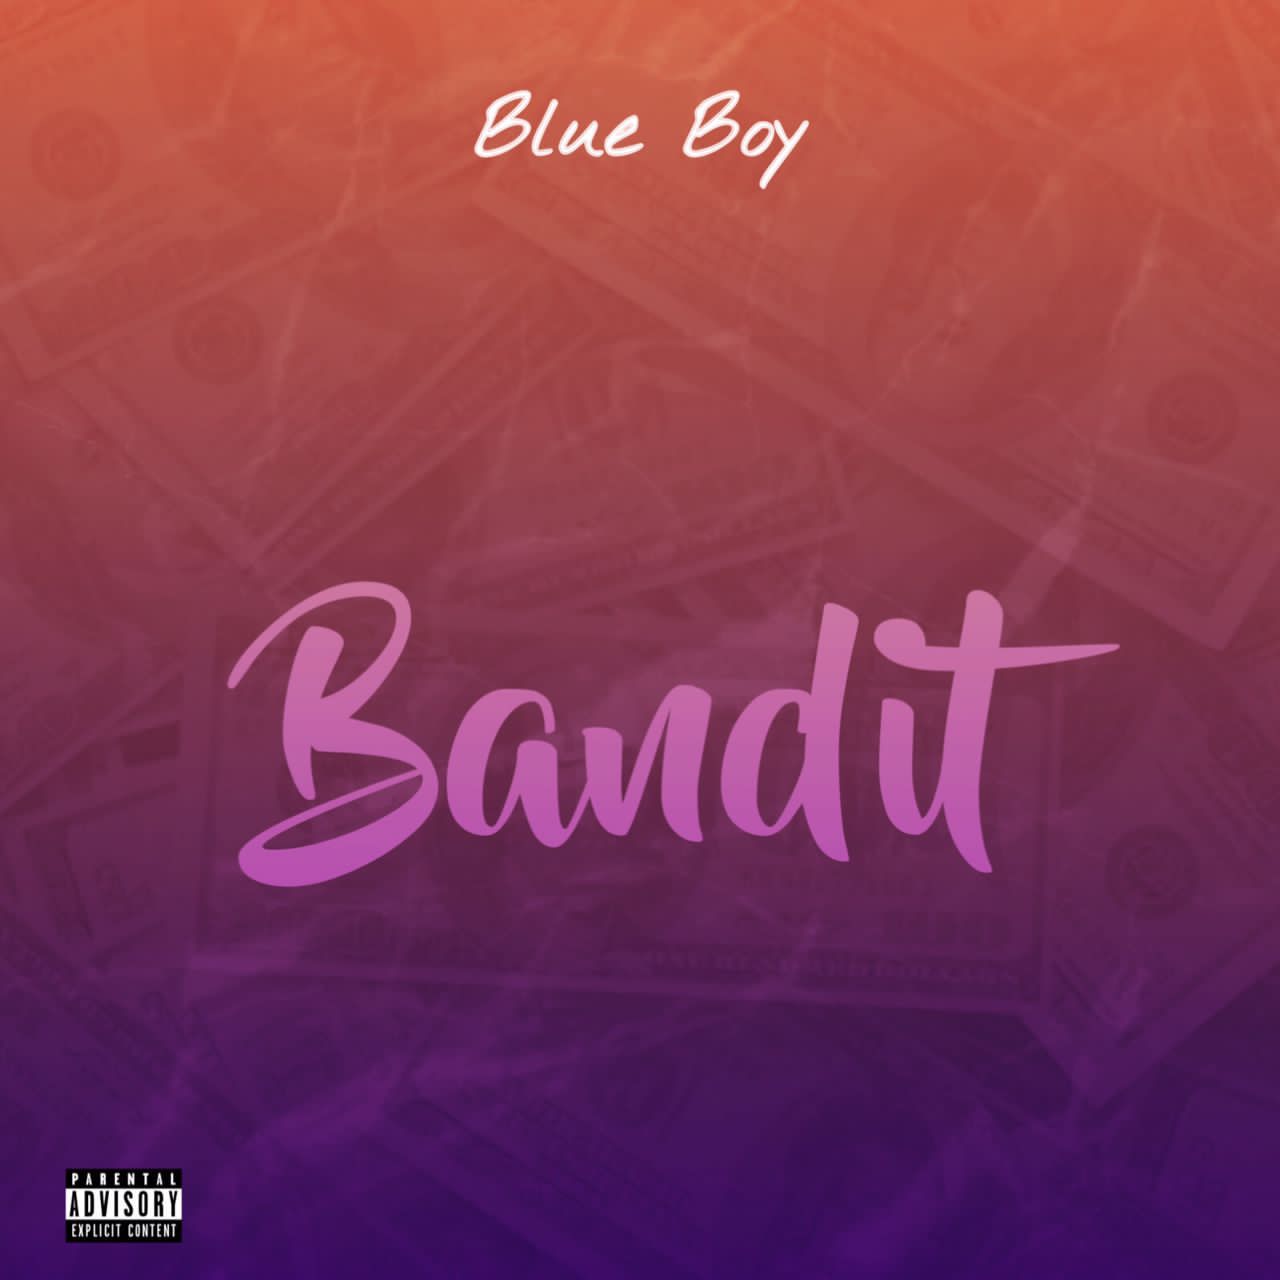 Blue Boy Bandit